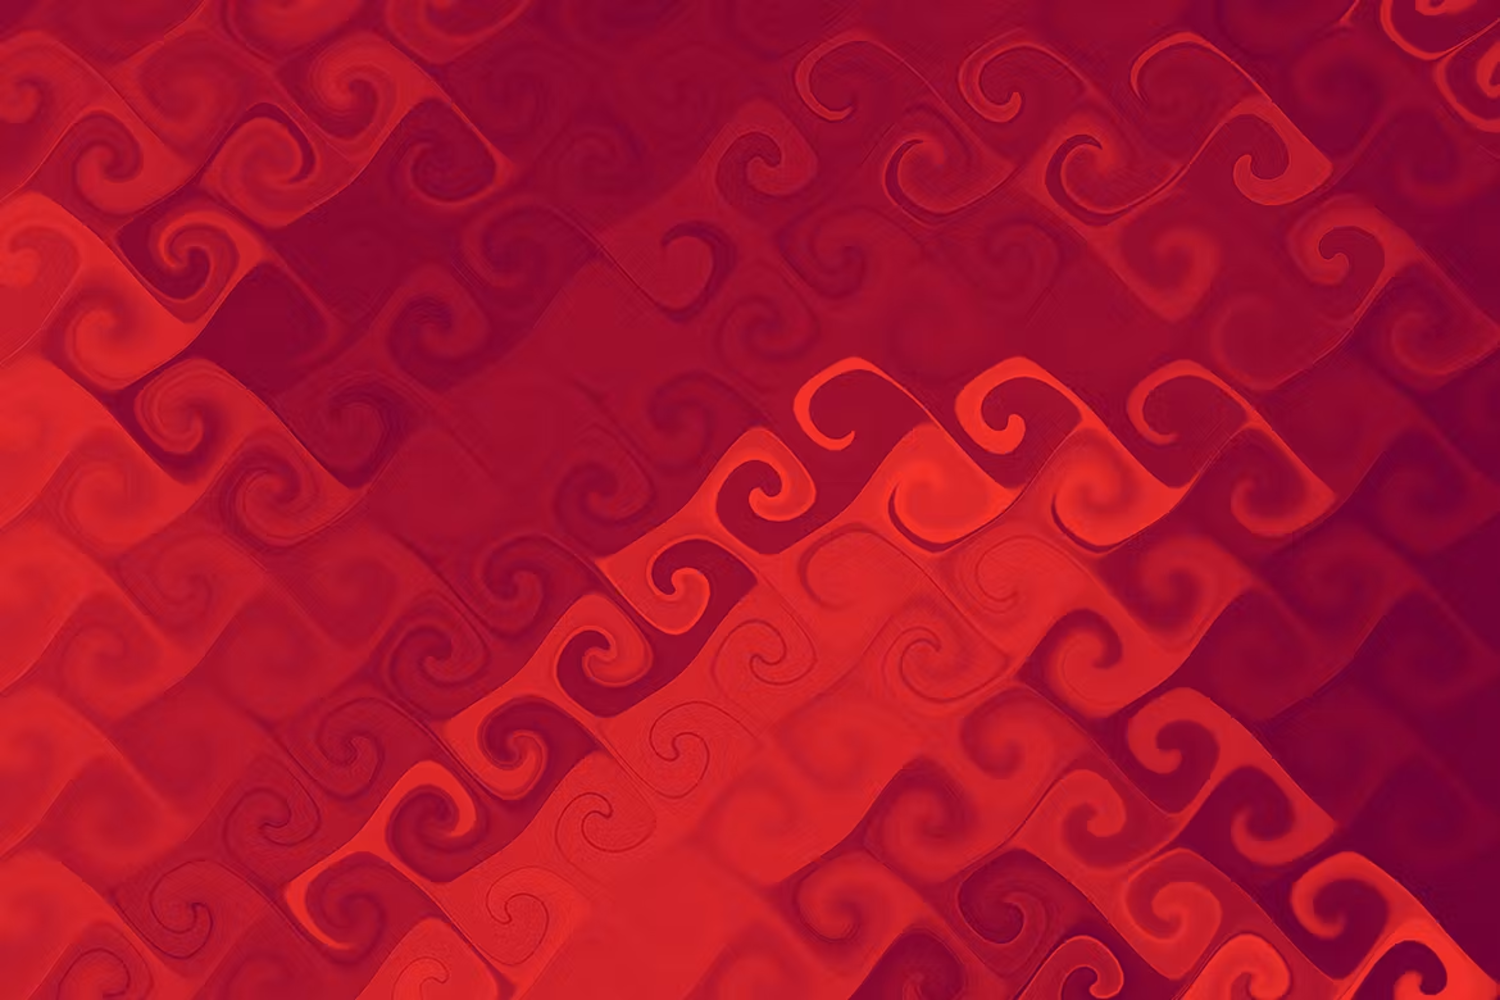 6019多彩抽象曲线背景设计素材-Curly Backgrounds